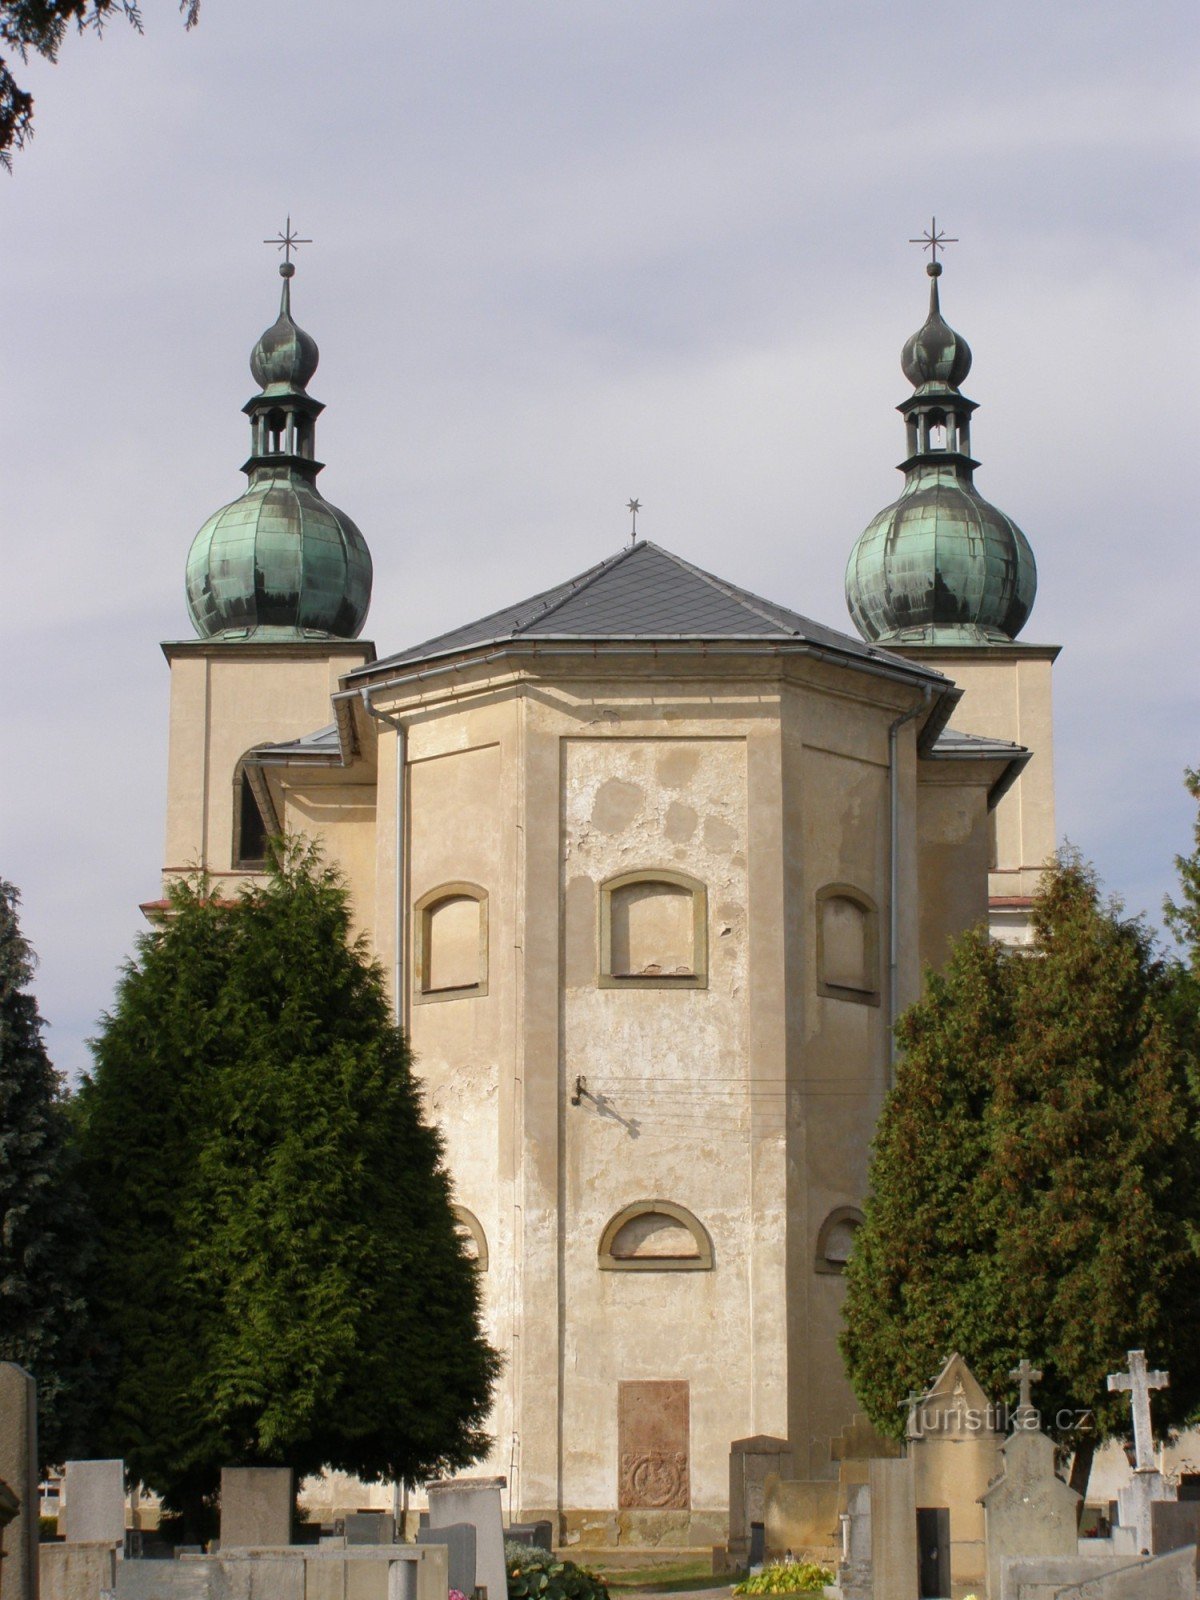 Kostelec nad Orlicí - kerk van St. Anne